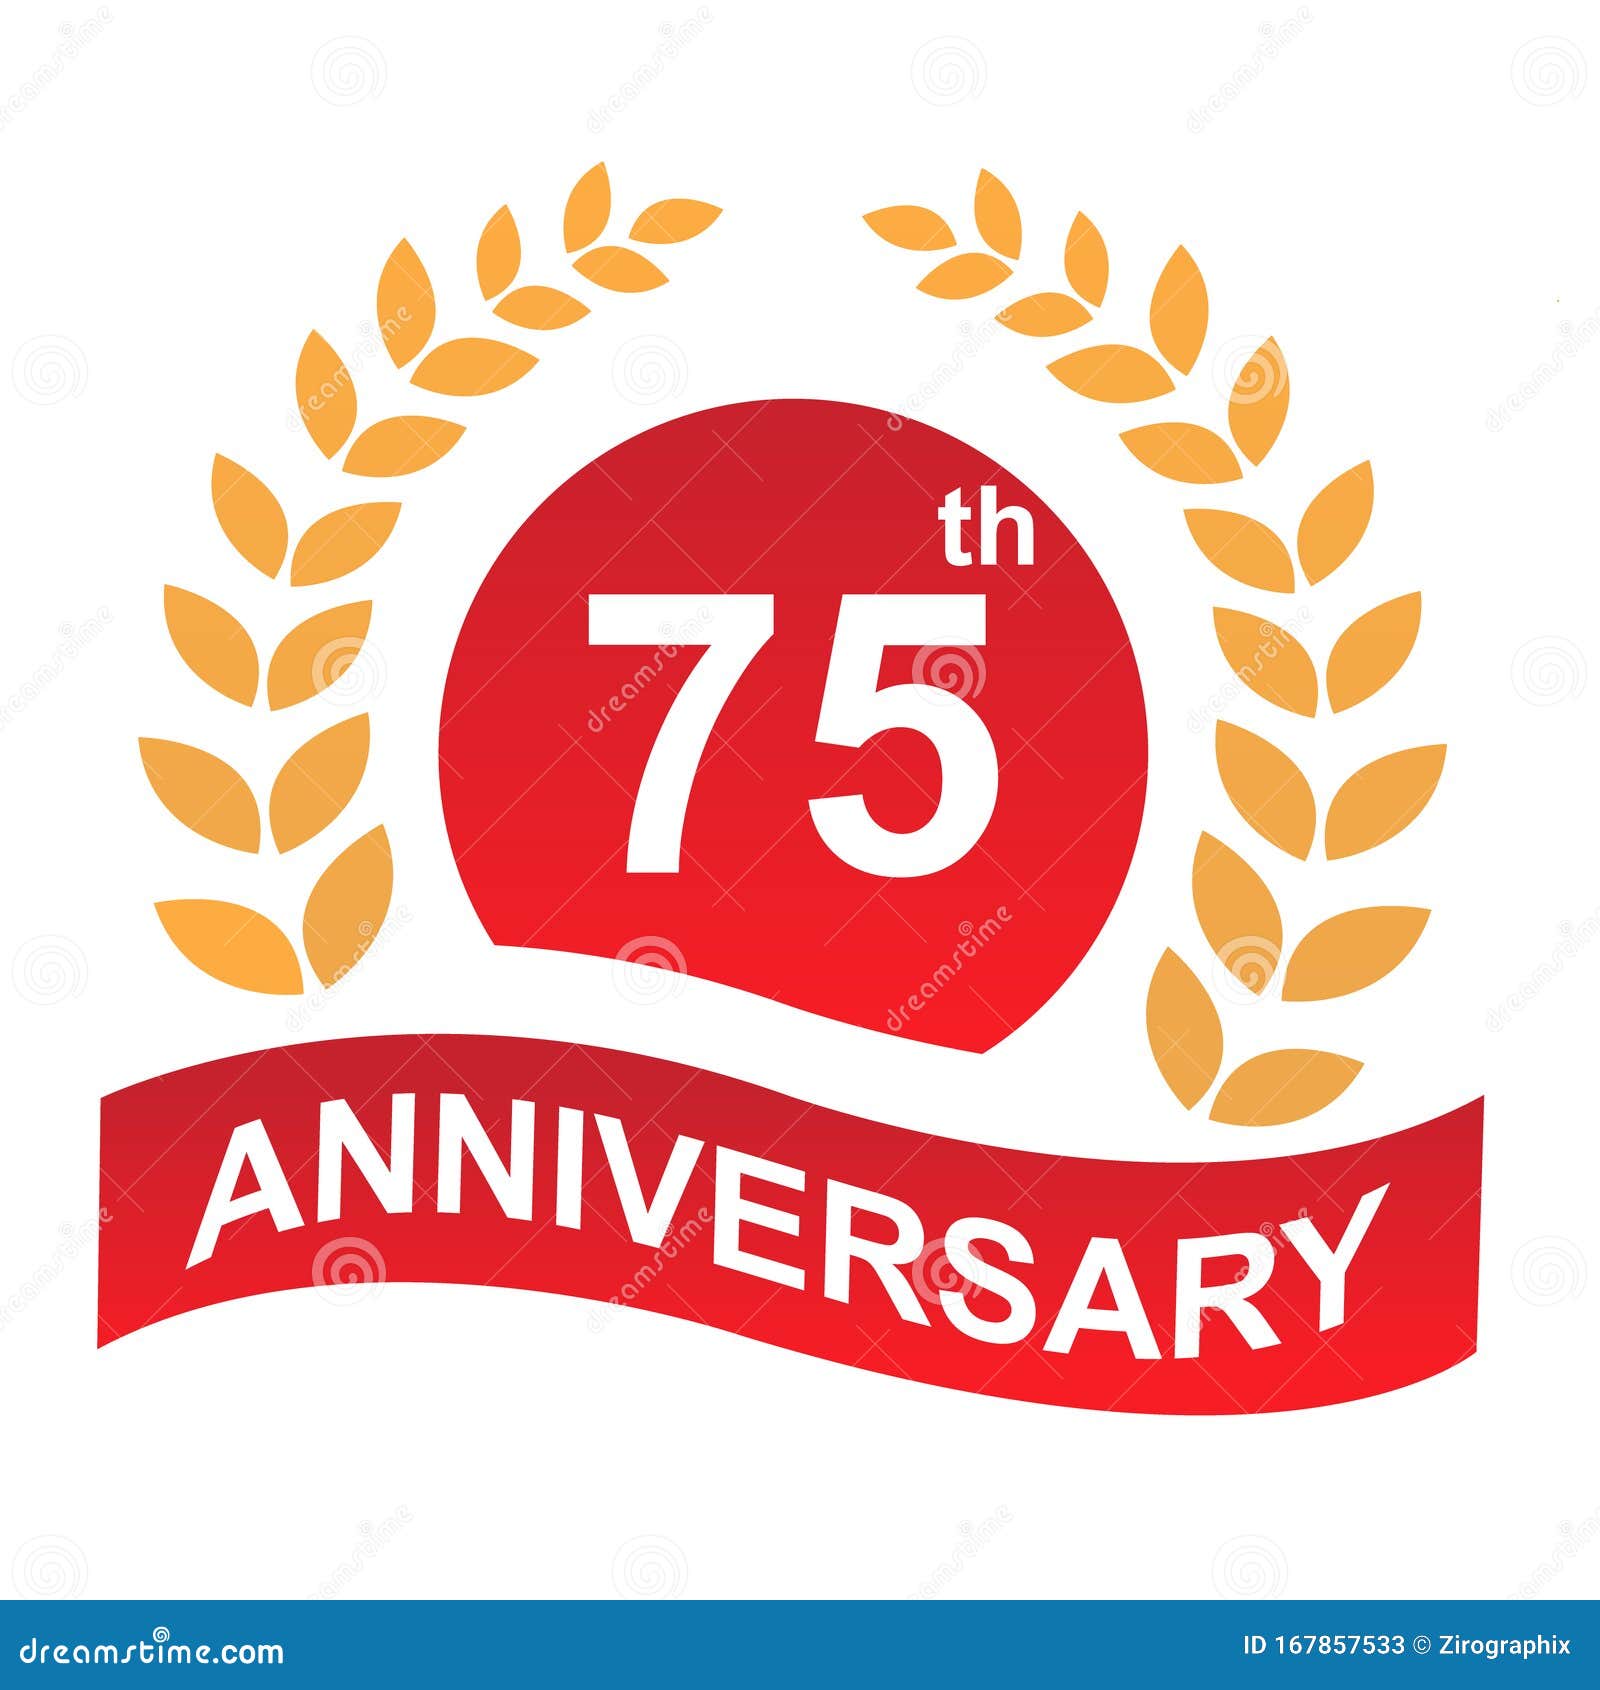 75th Anniversary Logo Illustration Art Stock Illustration ...